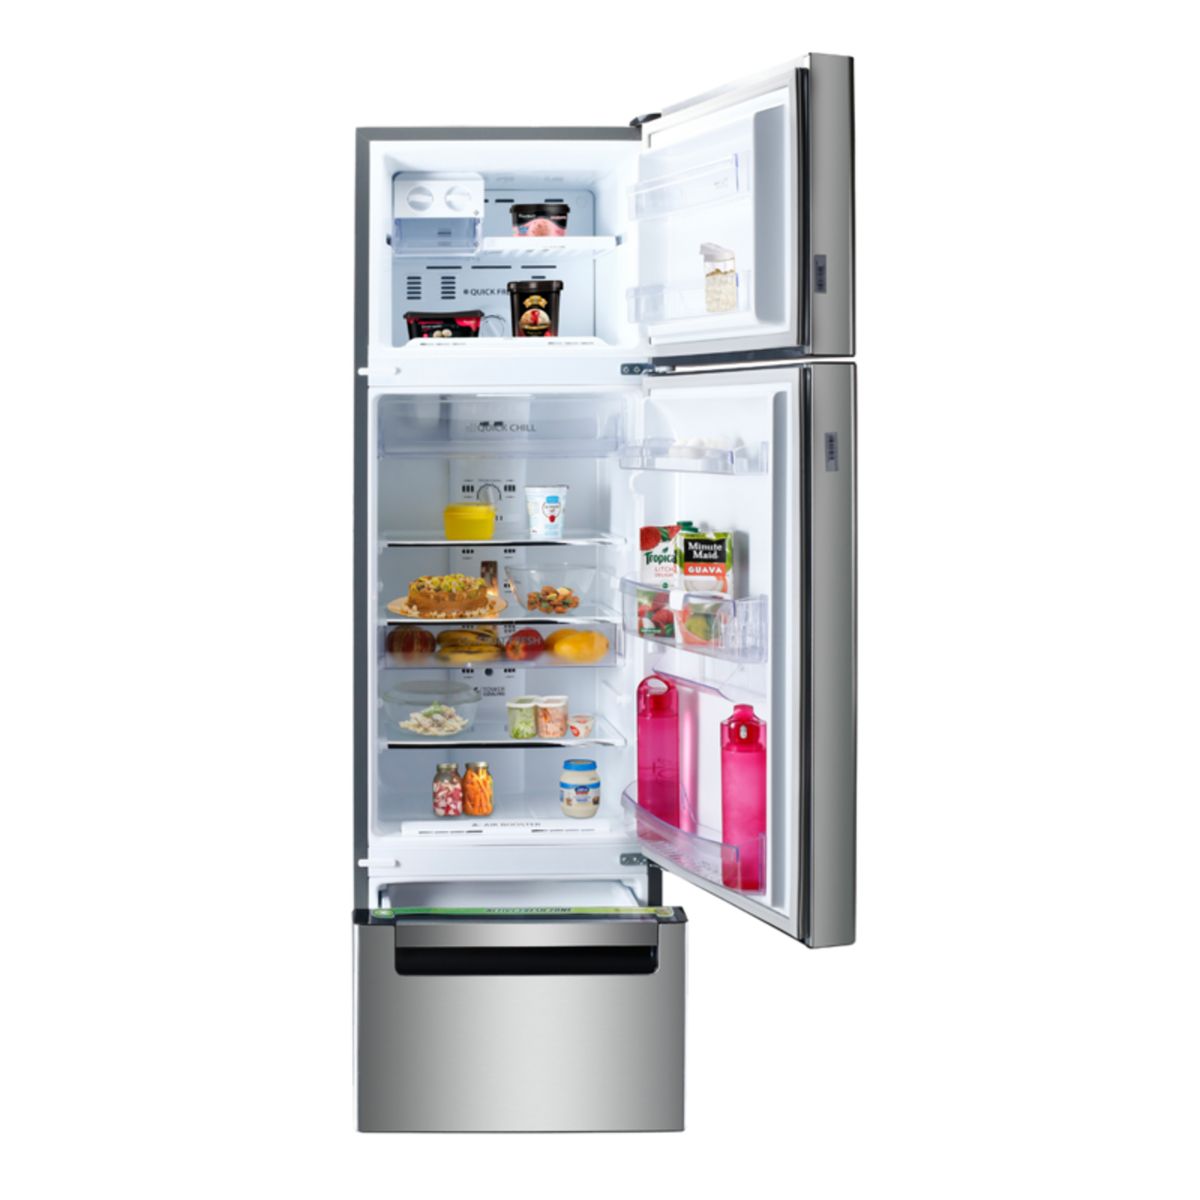 hűtő, hűtőszekrény, hűtőajtó, energia, fogyasztás, áram, hűtés